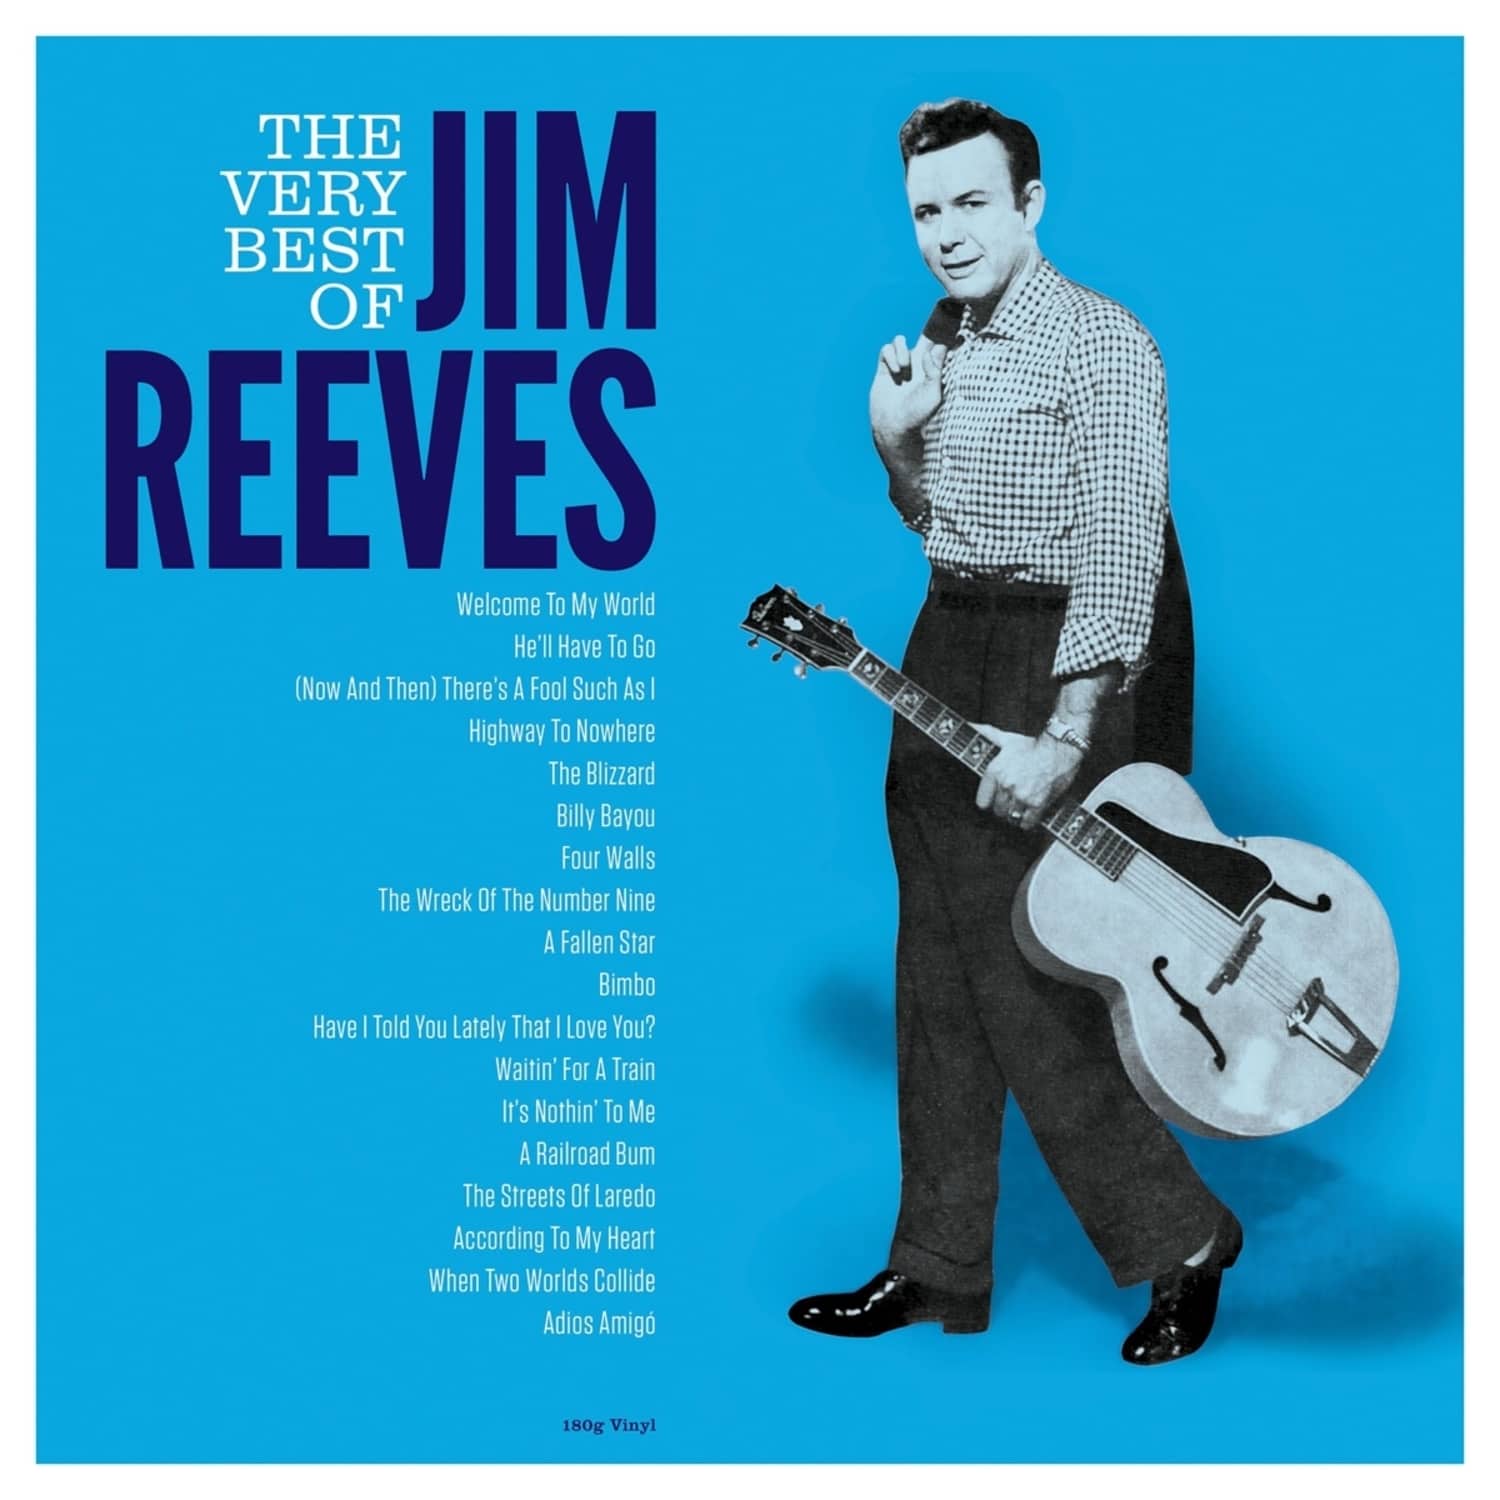 Jim Reeves - VERY BEST OF 